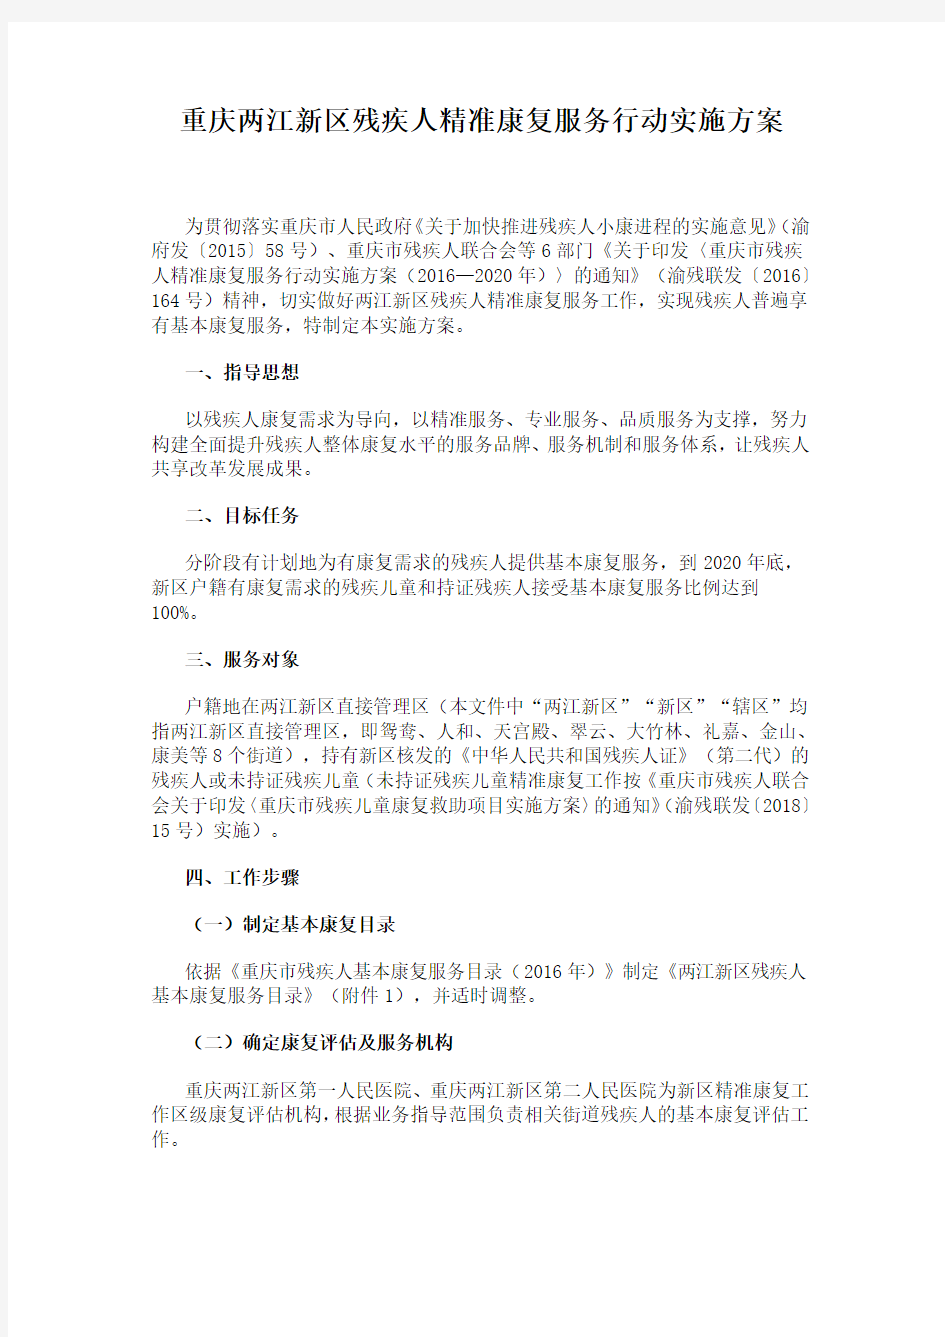 重庆两江新区残疾人精准康复服务行动实施方案